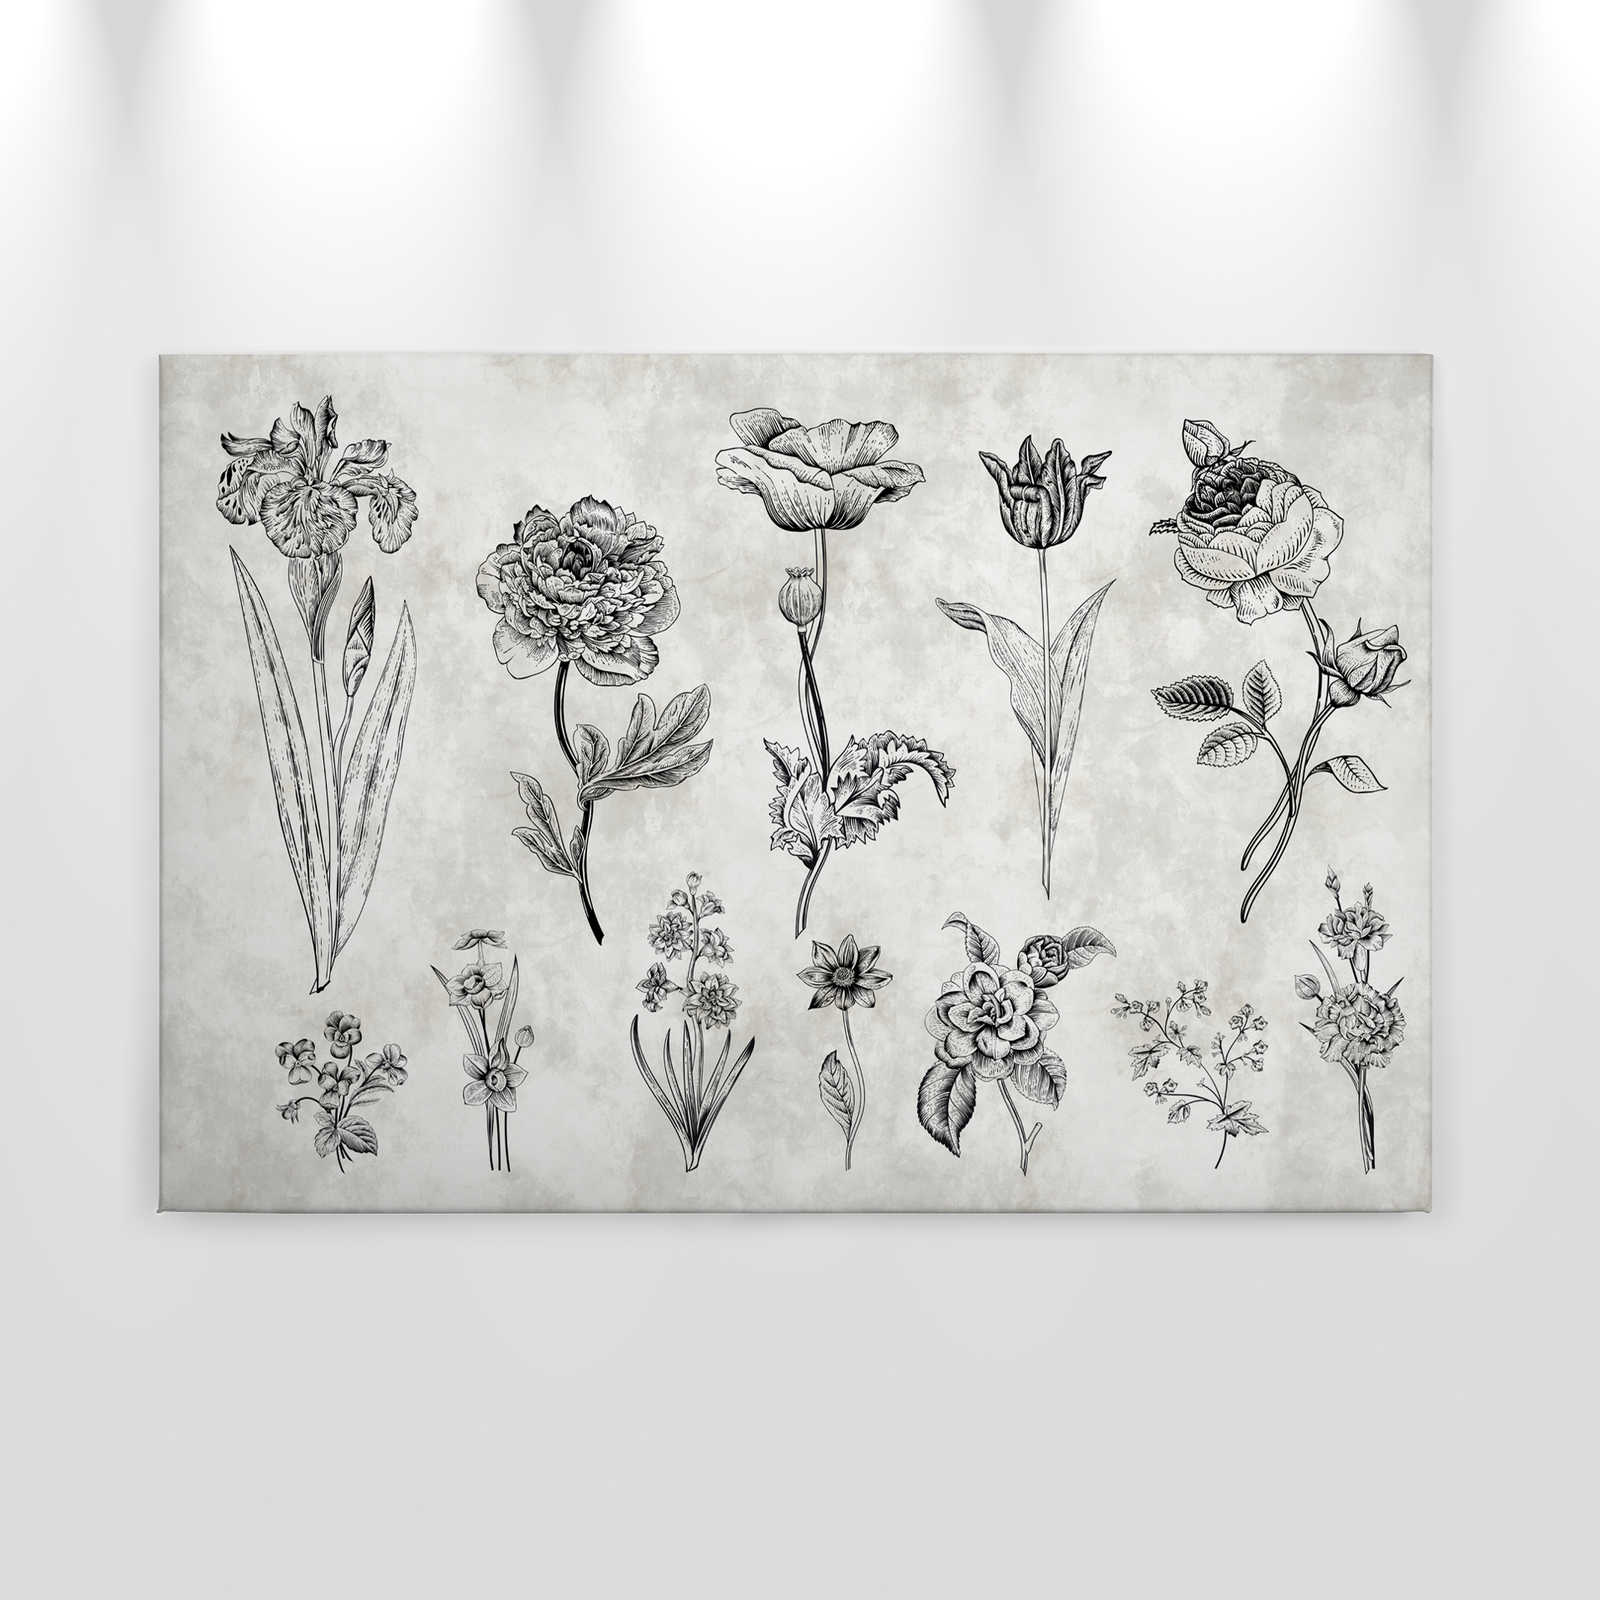             Lienzo Flores en estilo dibujo - 0,90 m x 0,60 m
        